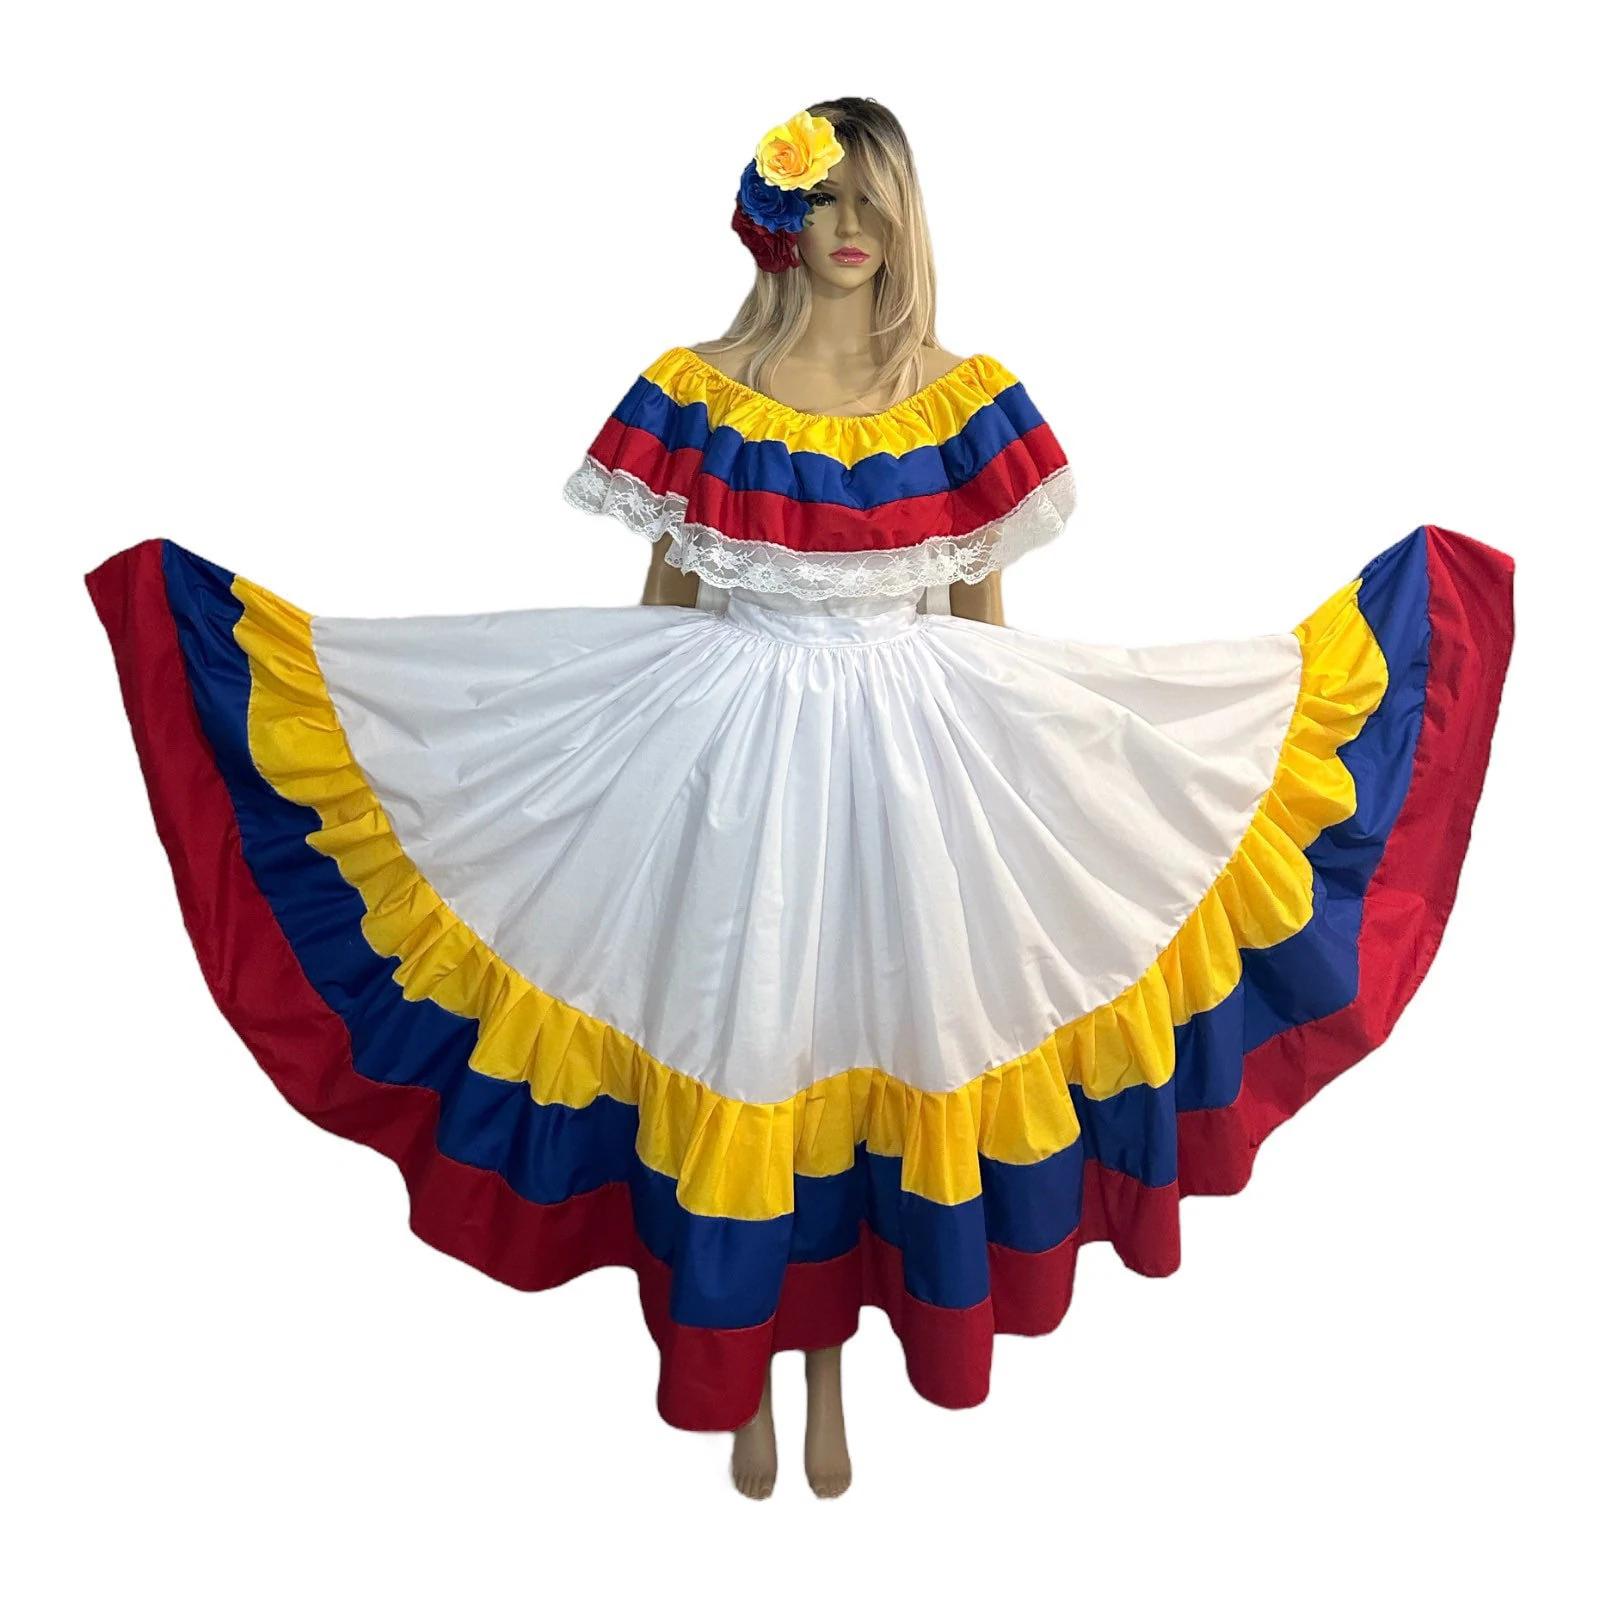 ropa de venezuela - Qué tipo de ropa usan en Venezuela